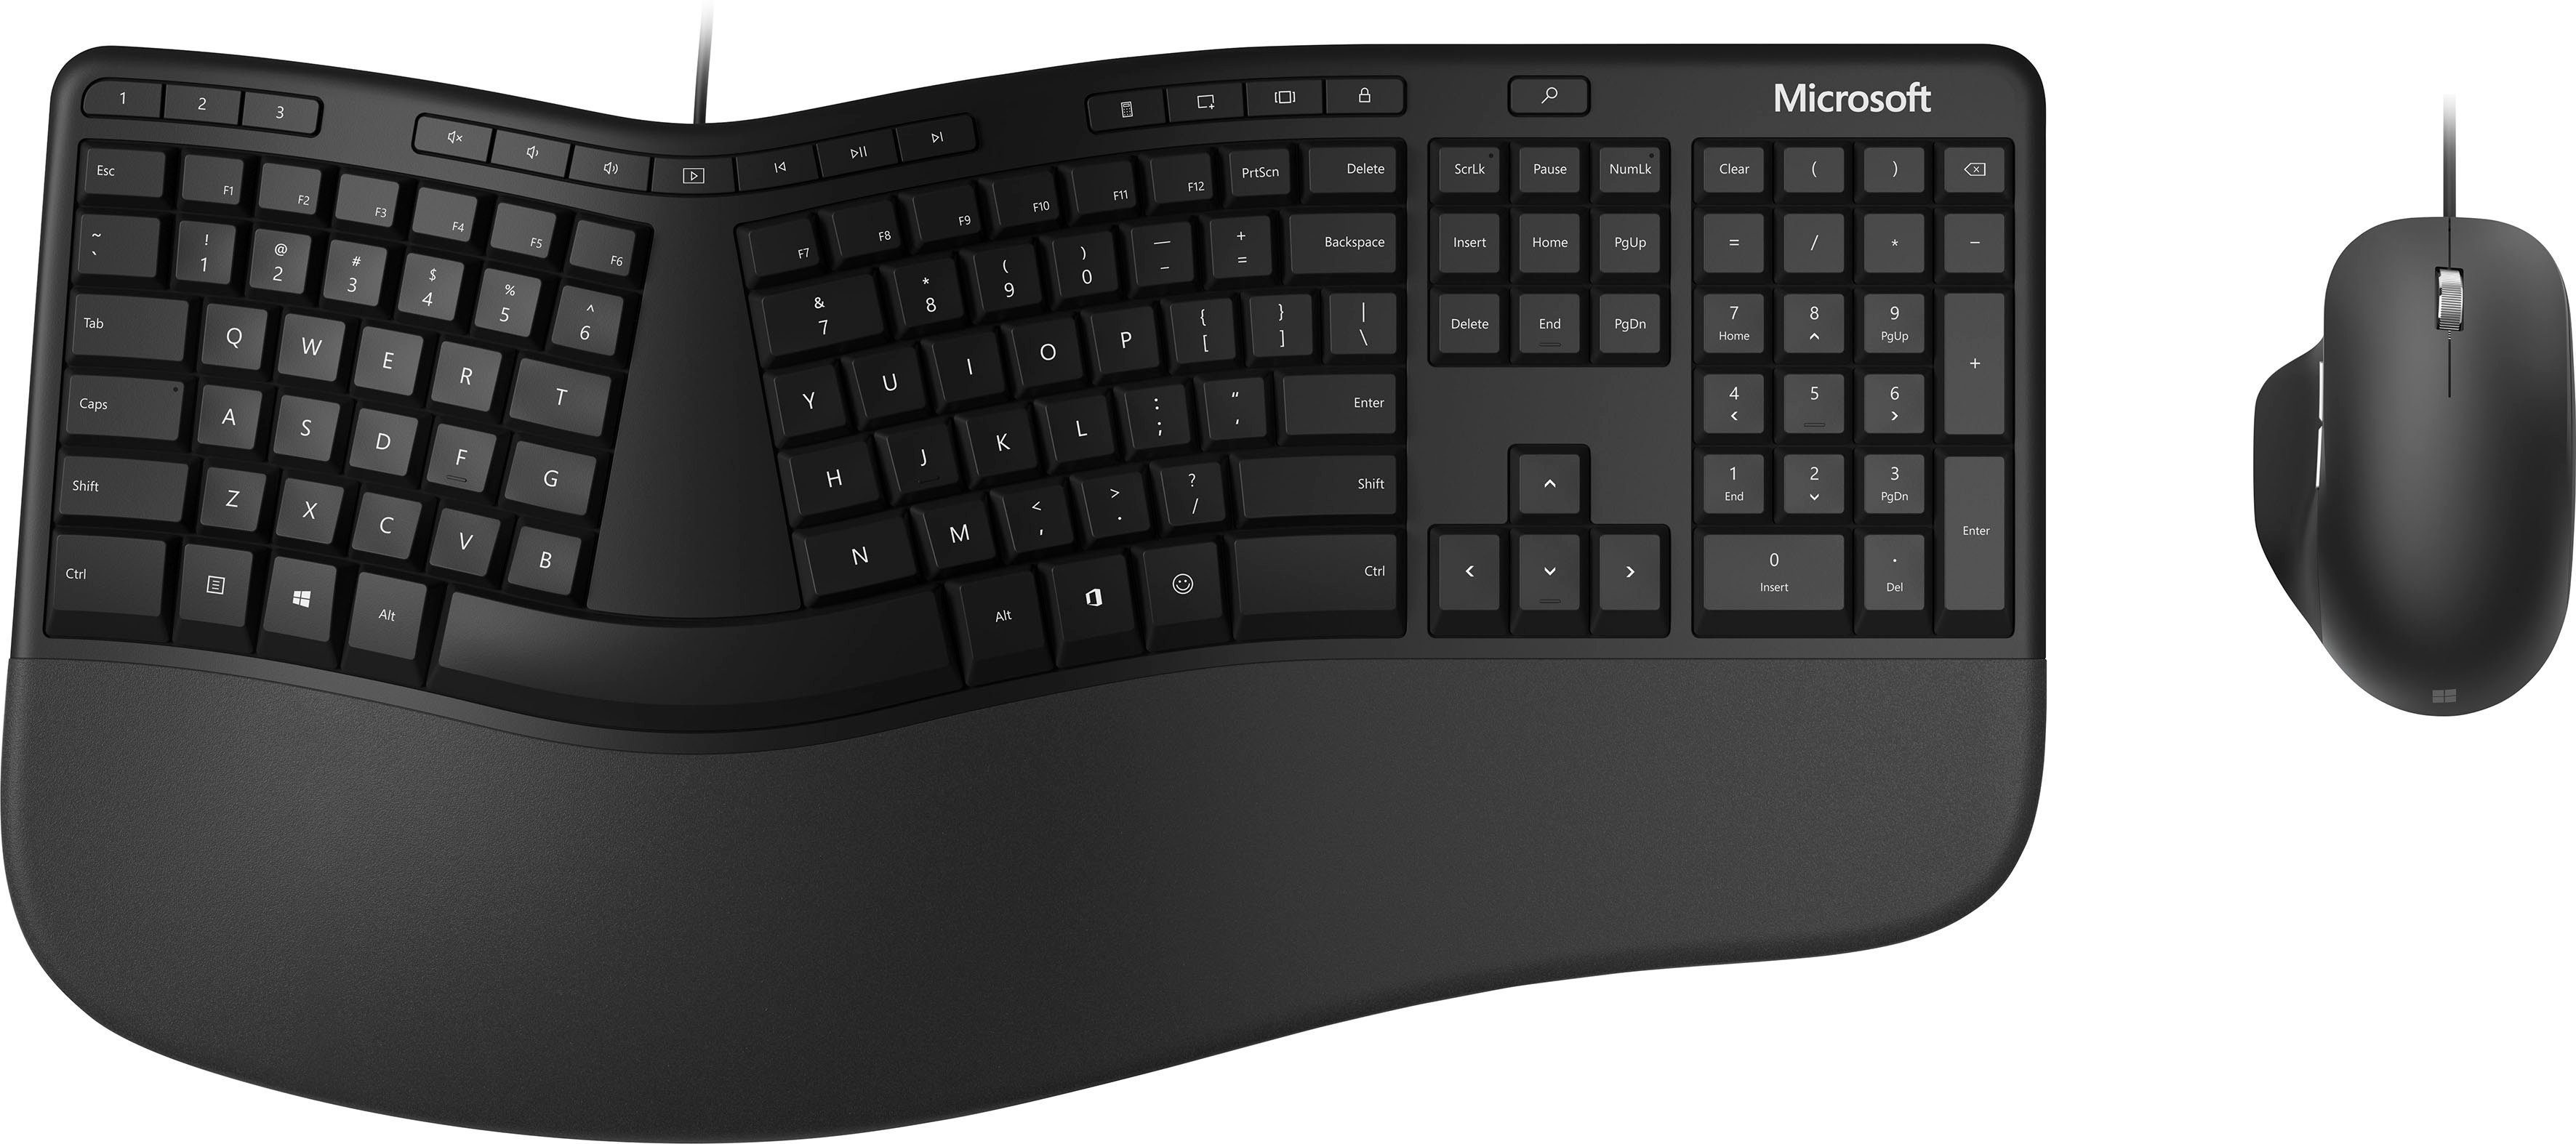 Microsoft Ergonomic Desktop Tastatur, Multimedia-Tasten, Handgelenkauflage  online kaufen | OTTO